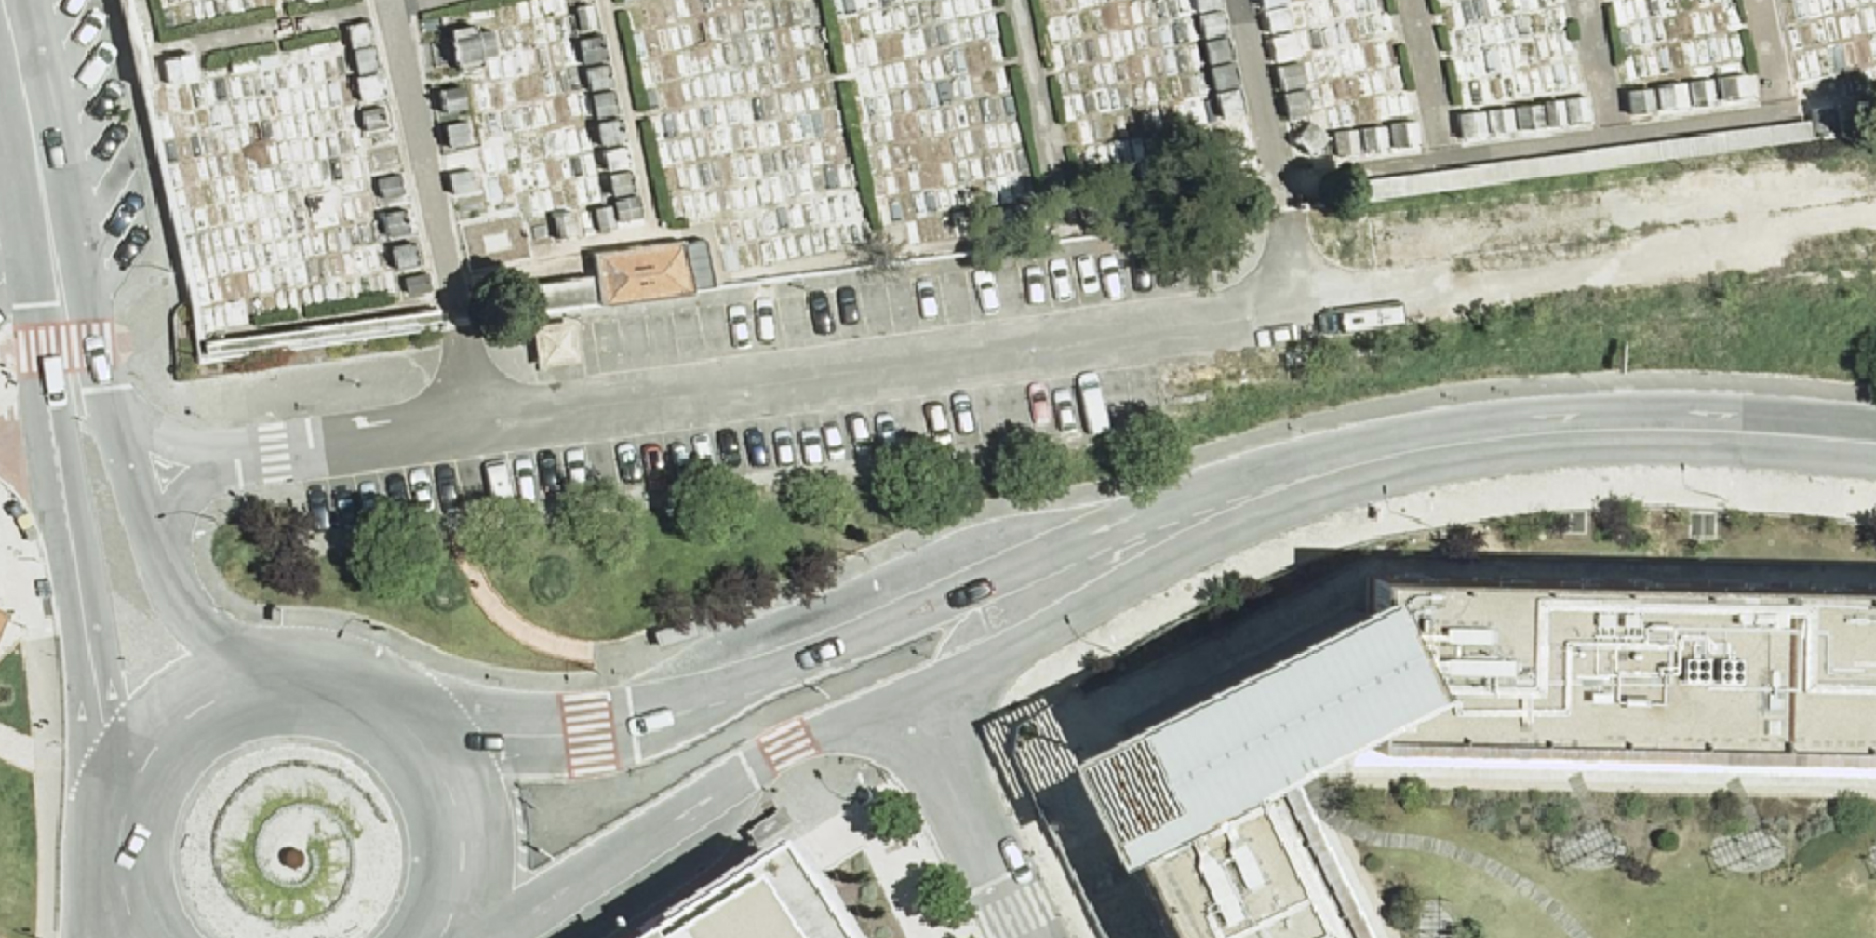 Pavimentação de estacionamento junto ao Cemitério de Carnaxide